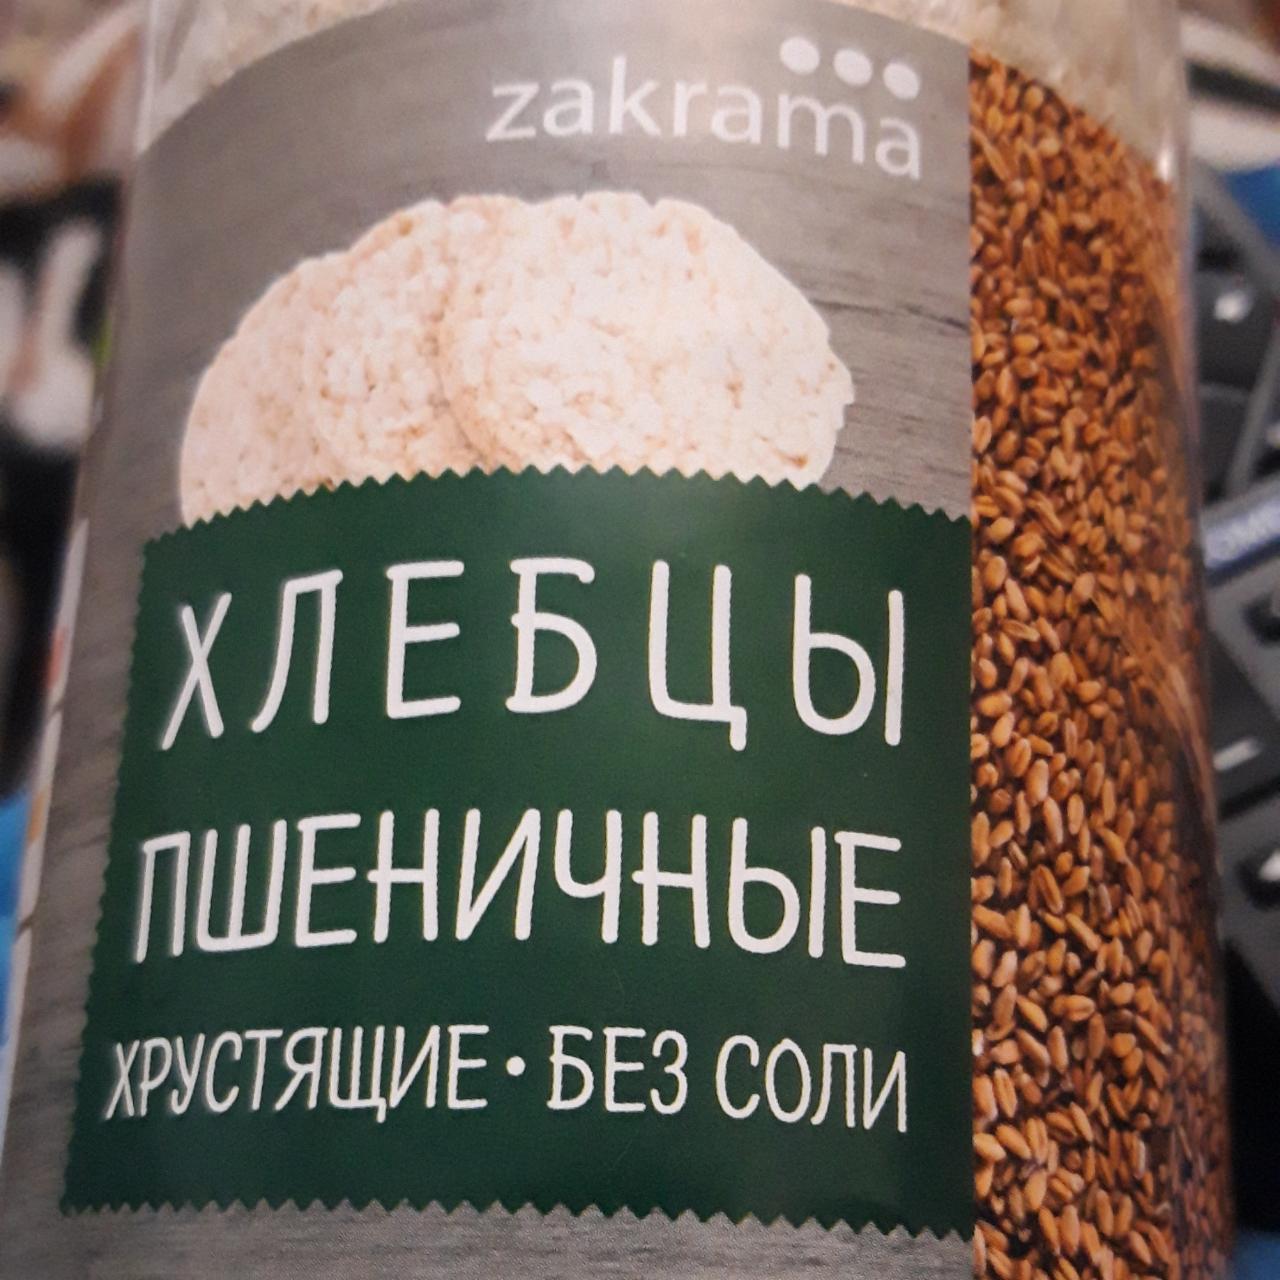 Фото - Хлебцы пшеничные хрустящие без соли Zakrama